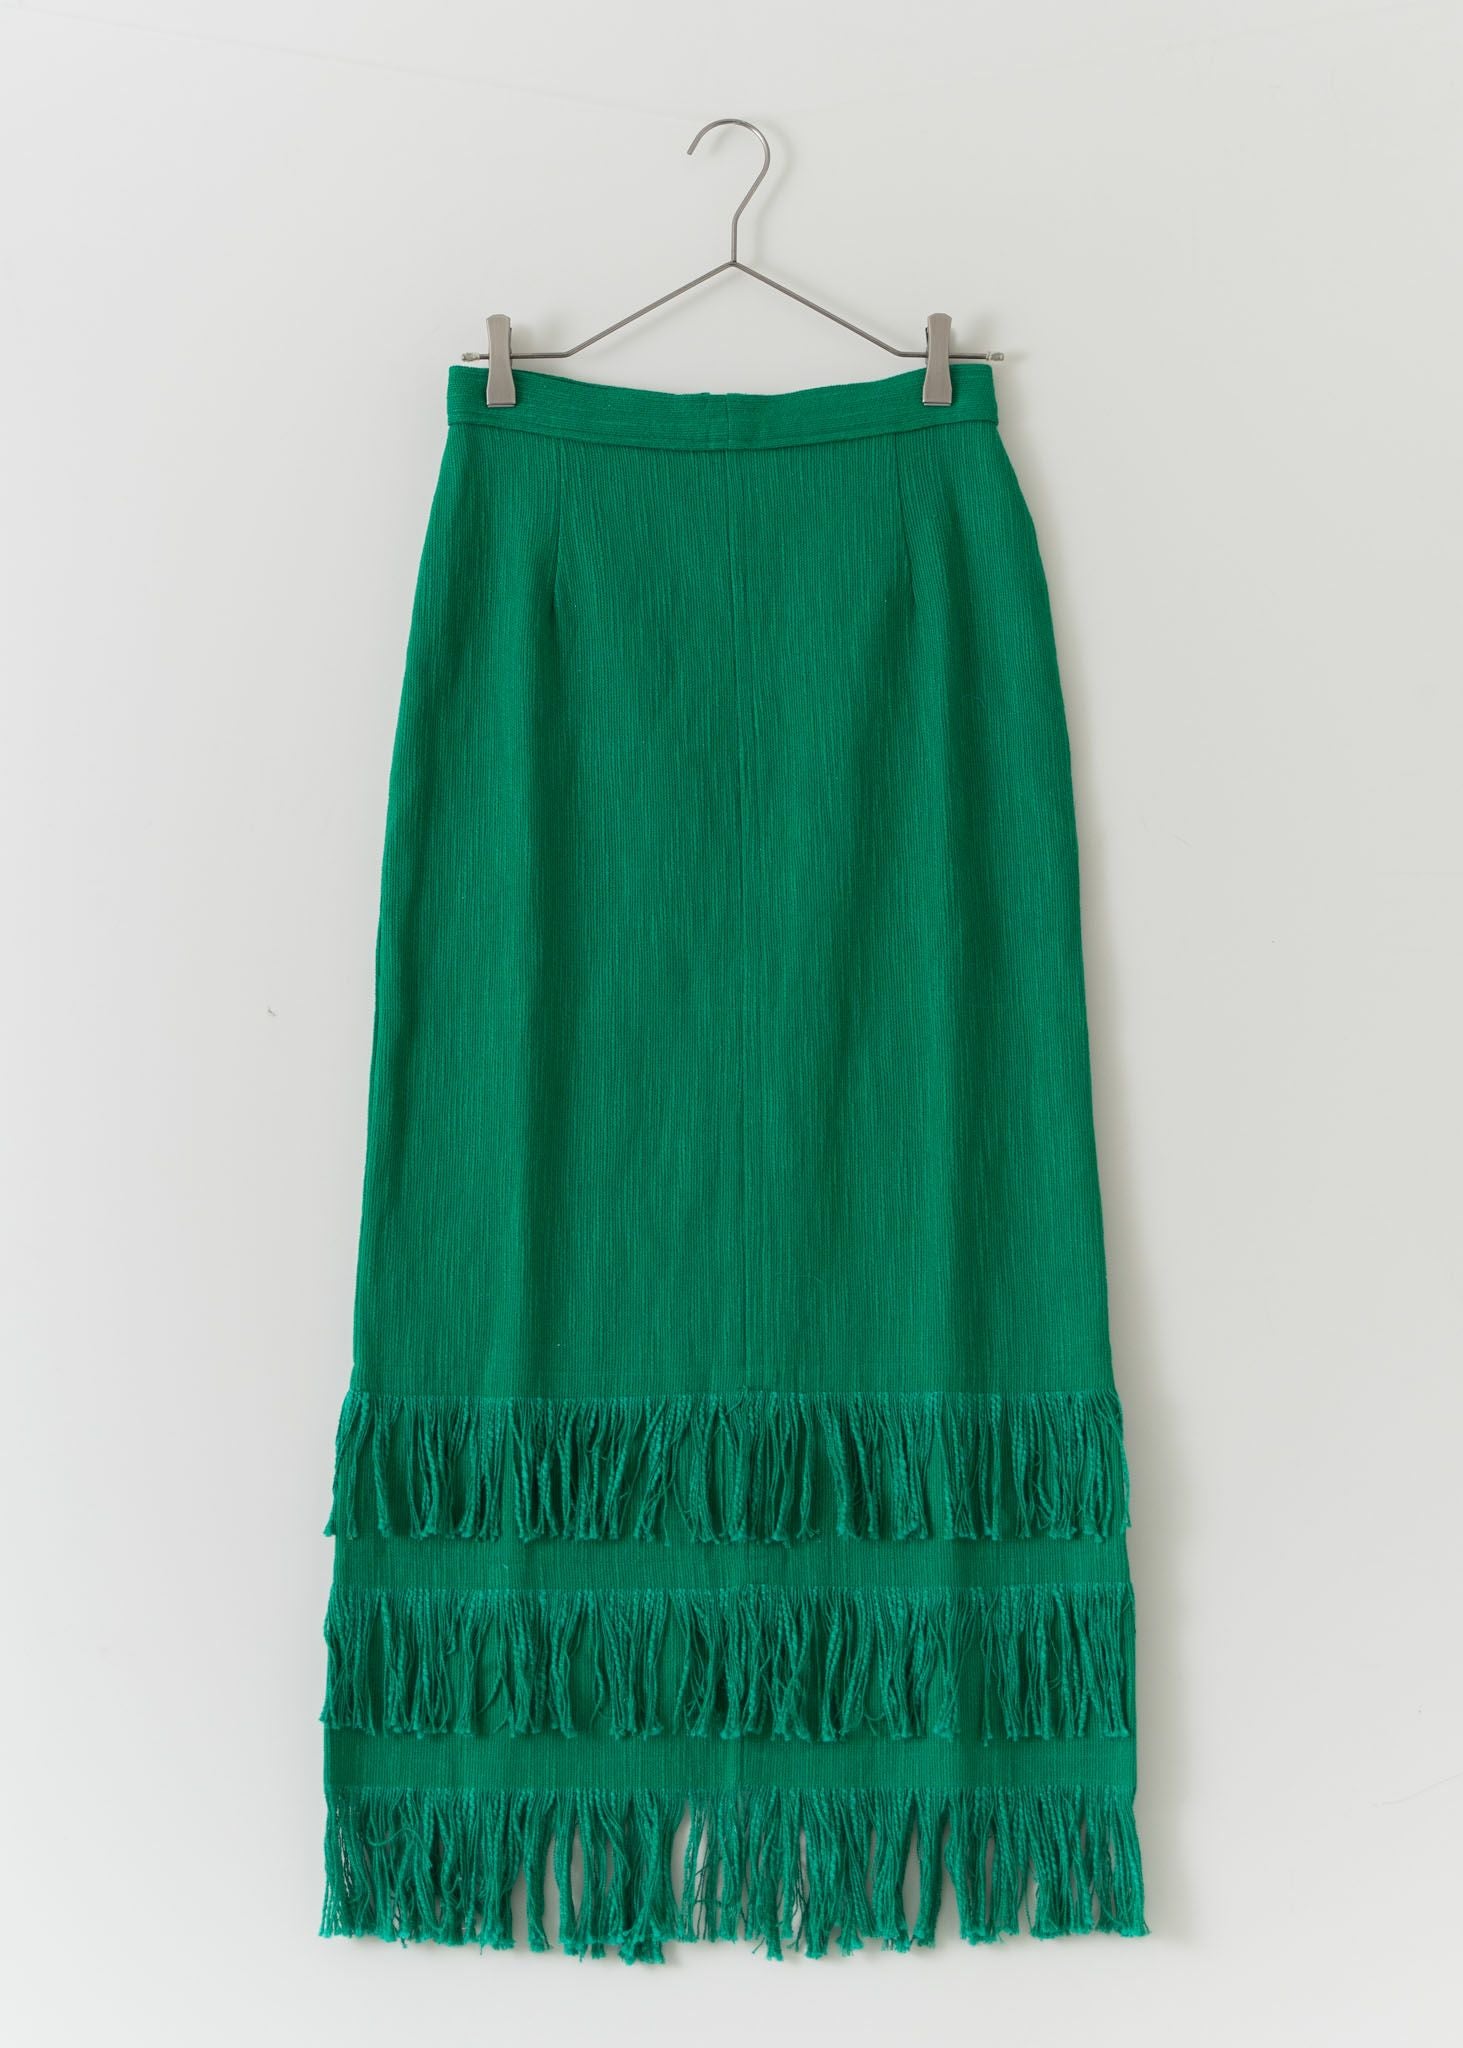 Cotton Fringe Skirt